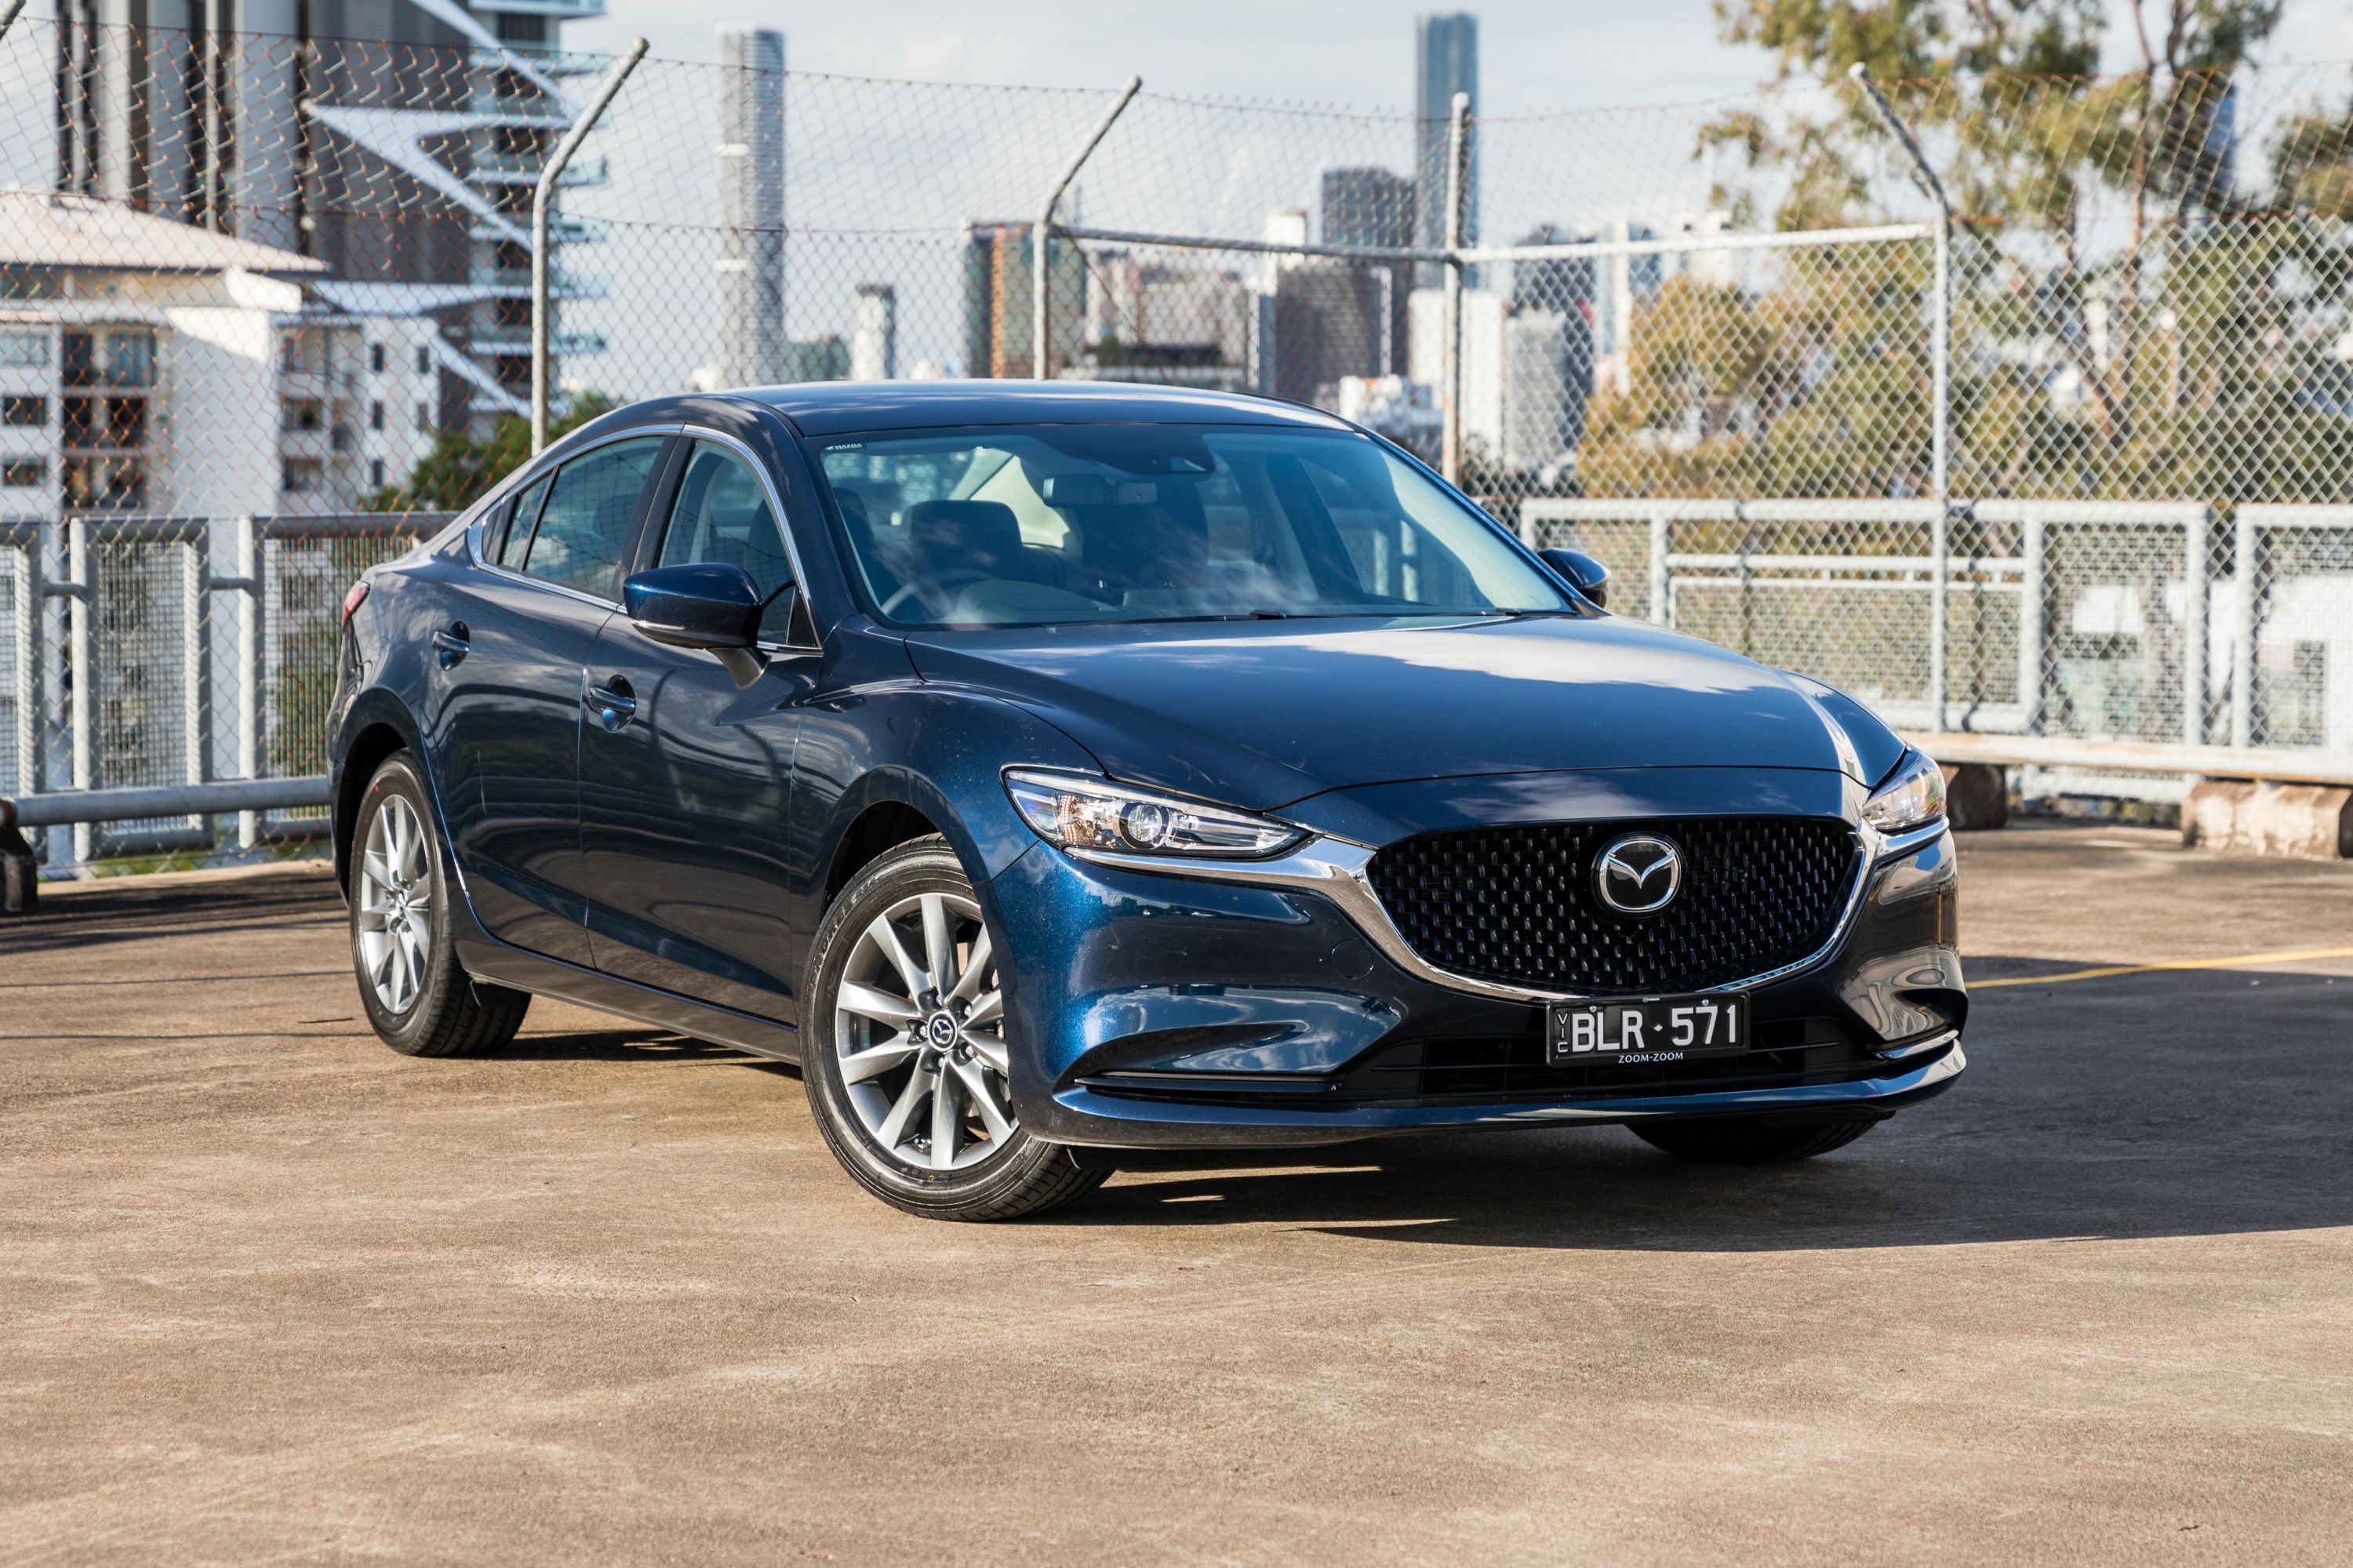 https://images.carexpert.com.au/resize/3000/-/app/uploads/2021/08/2021-Mazda-6-Sport-Sedan-HERO-2.jpg